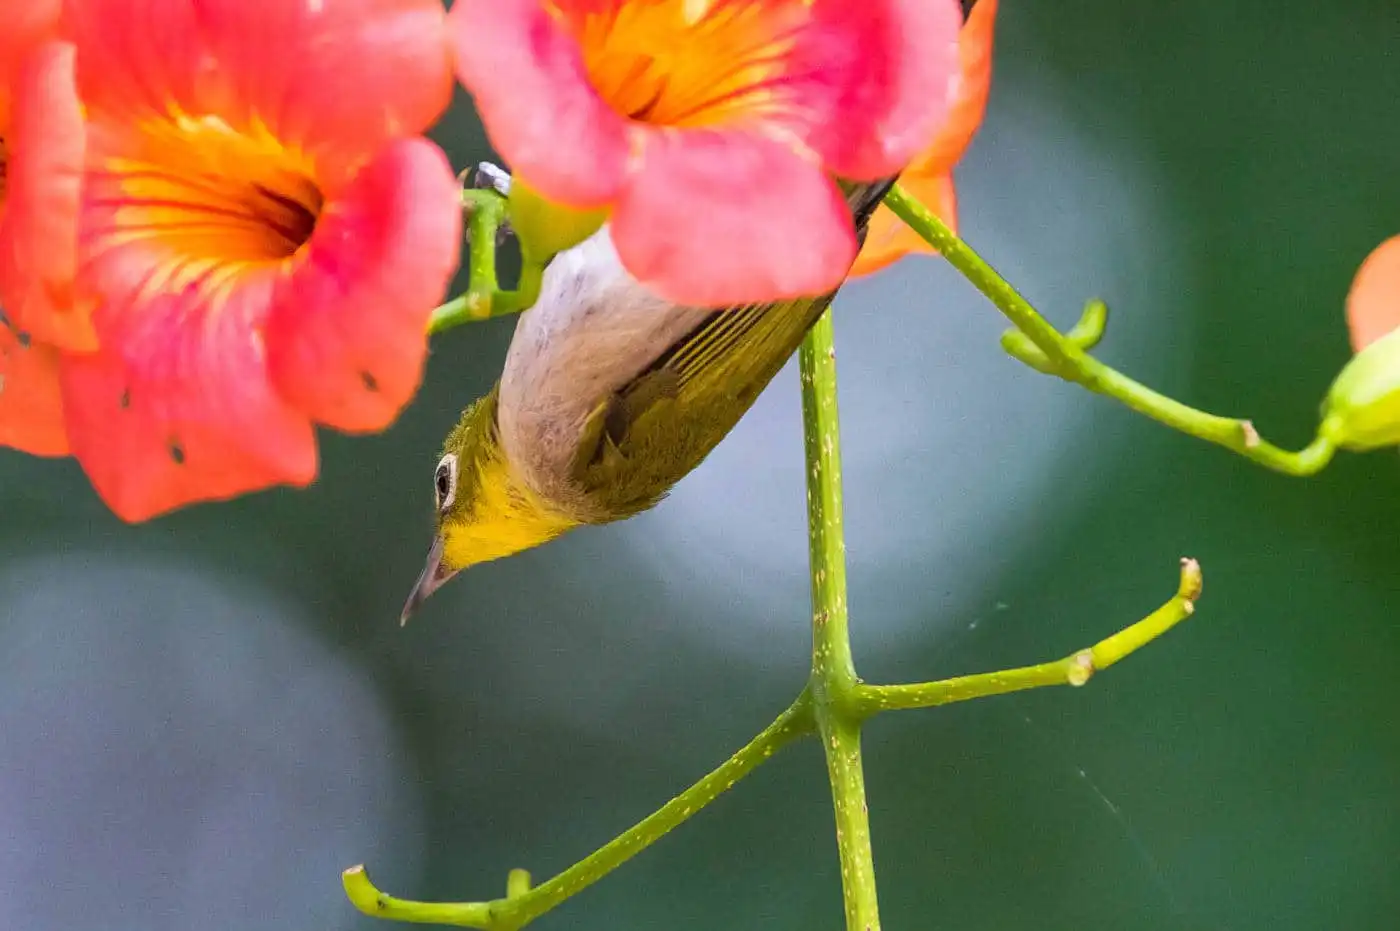 メジロの写真 高解像 野鳥写真集 バーダーショップ フジノ